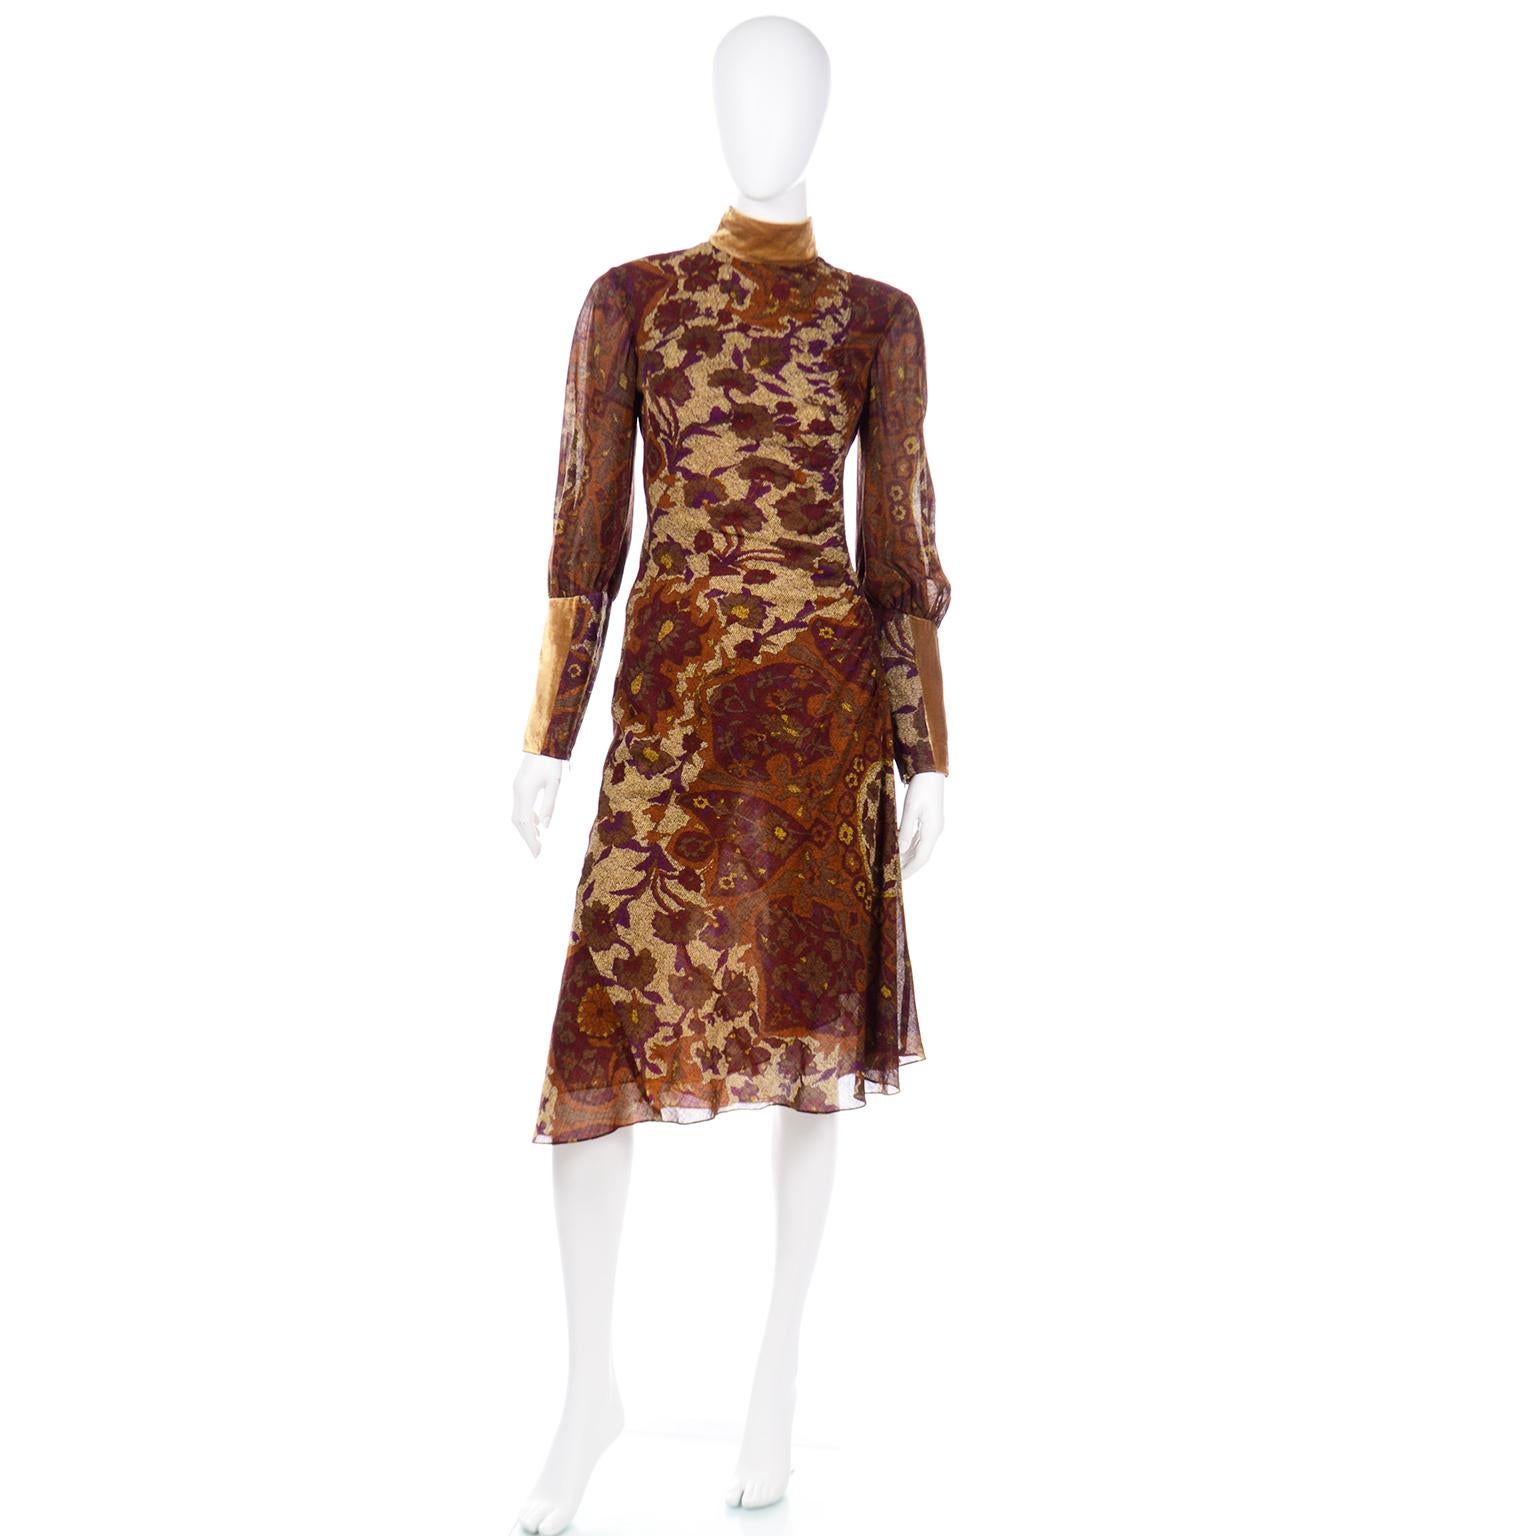 Dieses wunderschöne Vintage-Kleid von Kenzo ist mit einem abstrakten Blumendruck in satten Pflaumen-, Gold-, Kupfer- und Brauntönen bedruckt und mit goldenen Samtbesätzen an Kragen und Manschetten versehen. Der halbtransparente Stoff ist mit